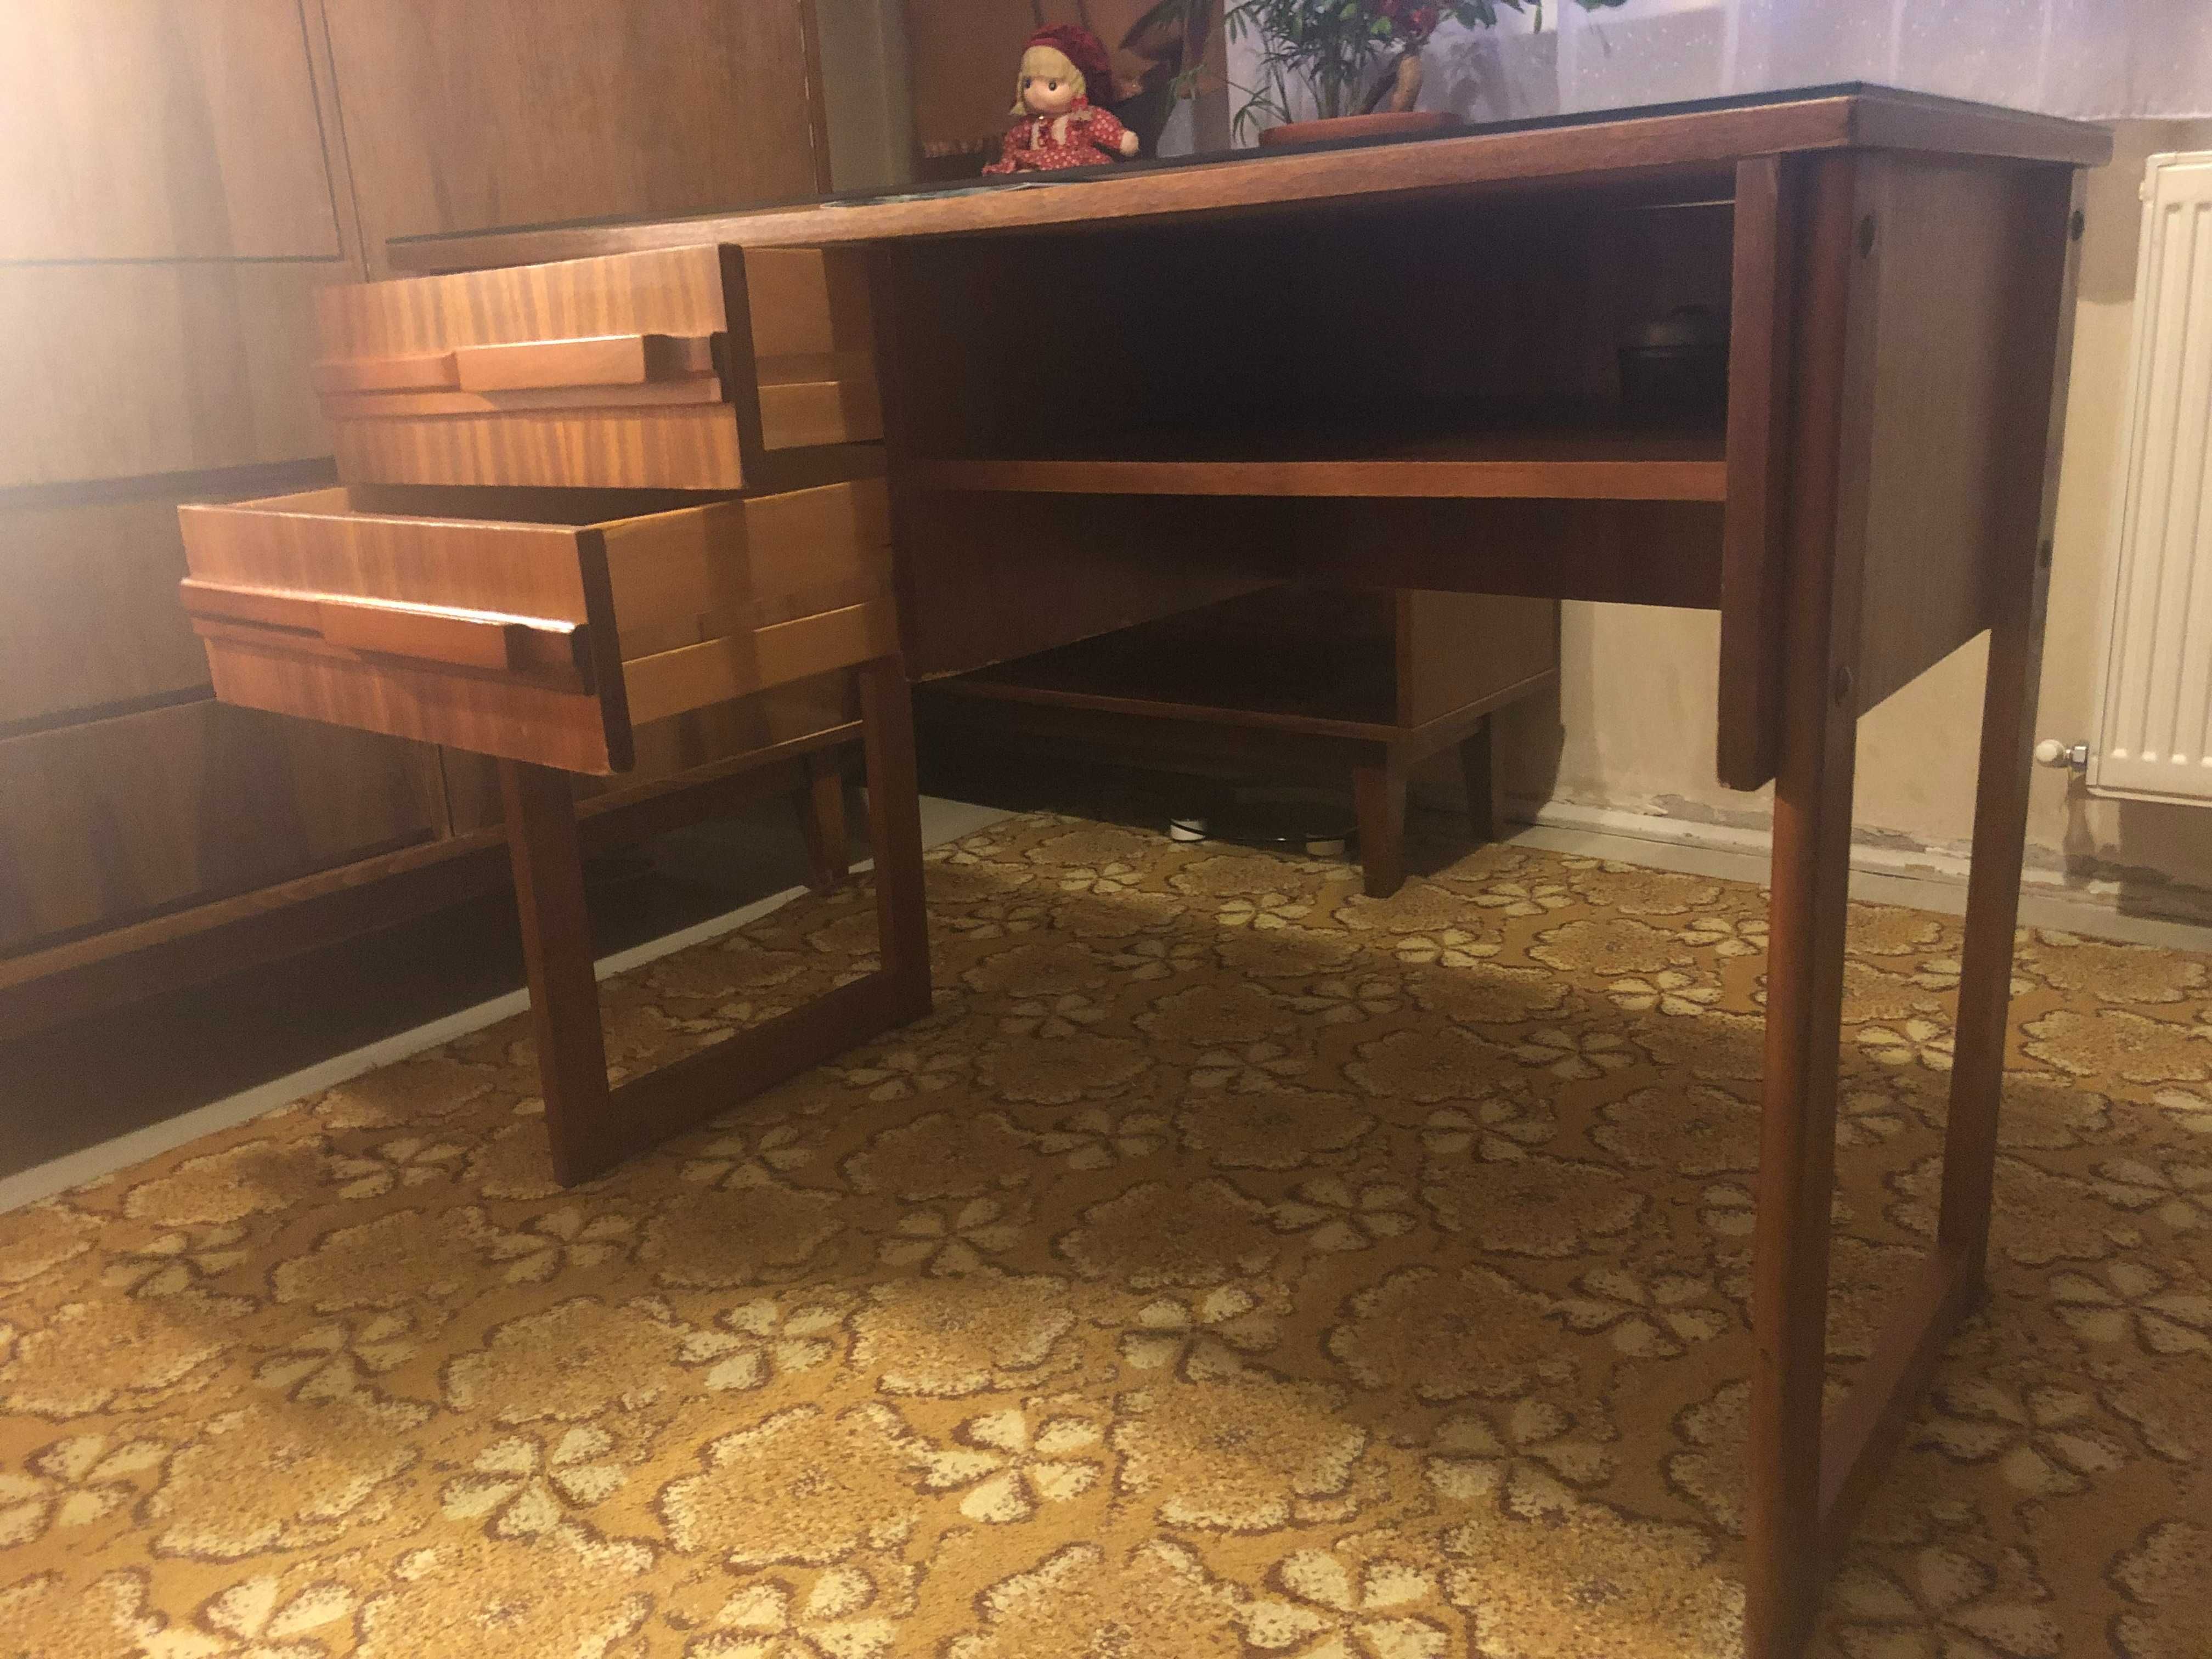 De vanzare birou lemn stare impecabila, romanesc, vintage